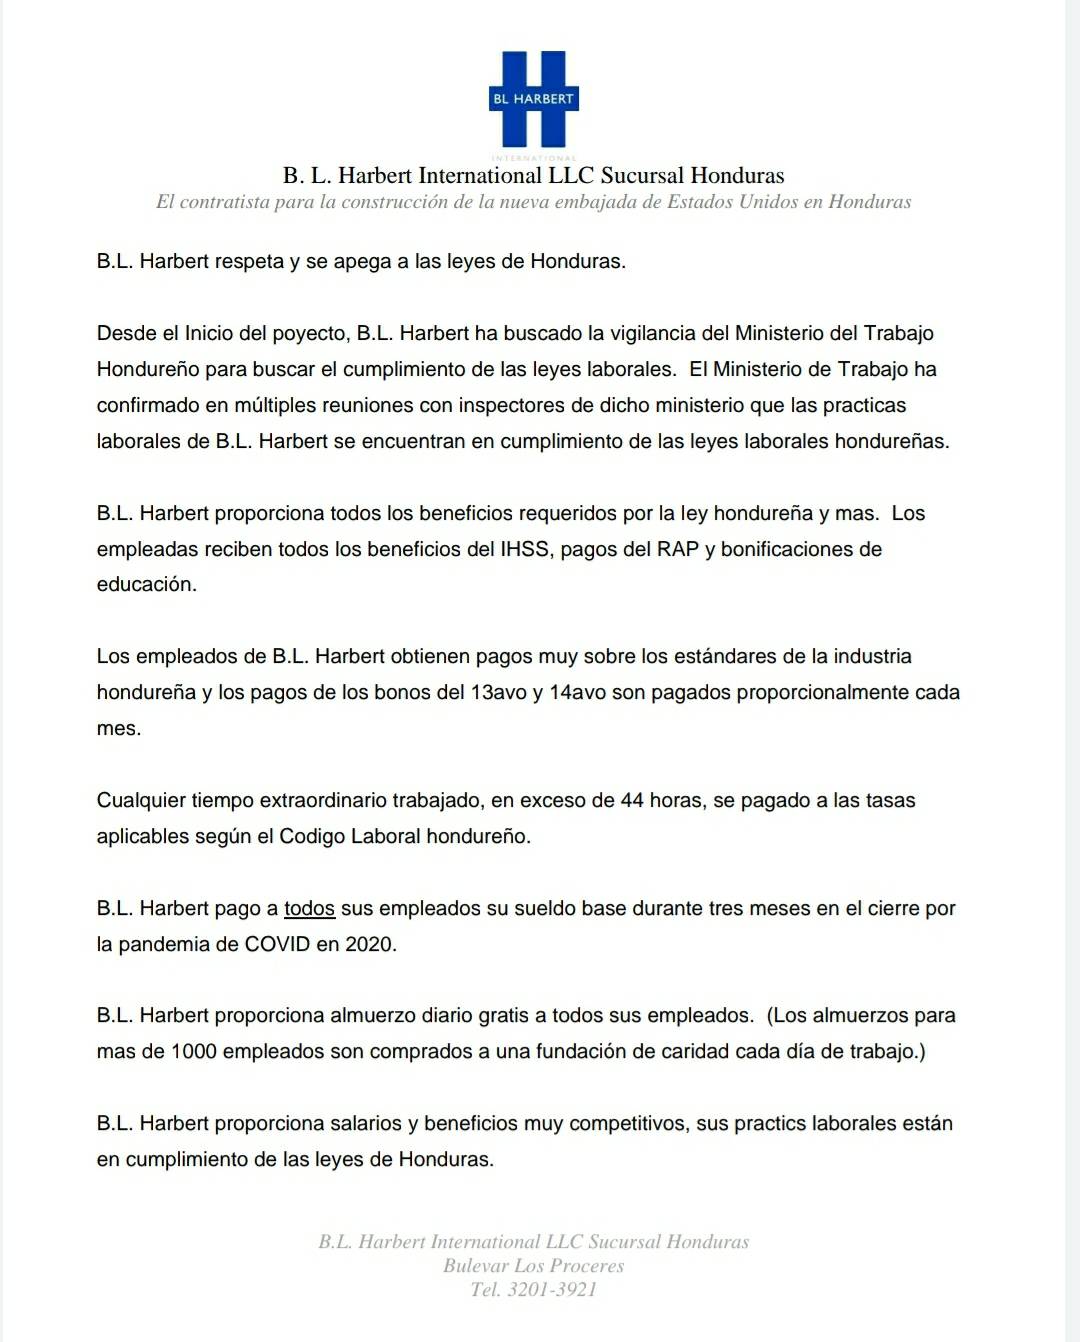 B. L. Harbert International LLC Sucursal Honduras, contratista para la construcción de la nueva embajada de EE.UU. en Honduras